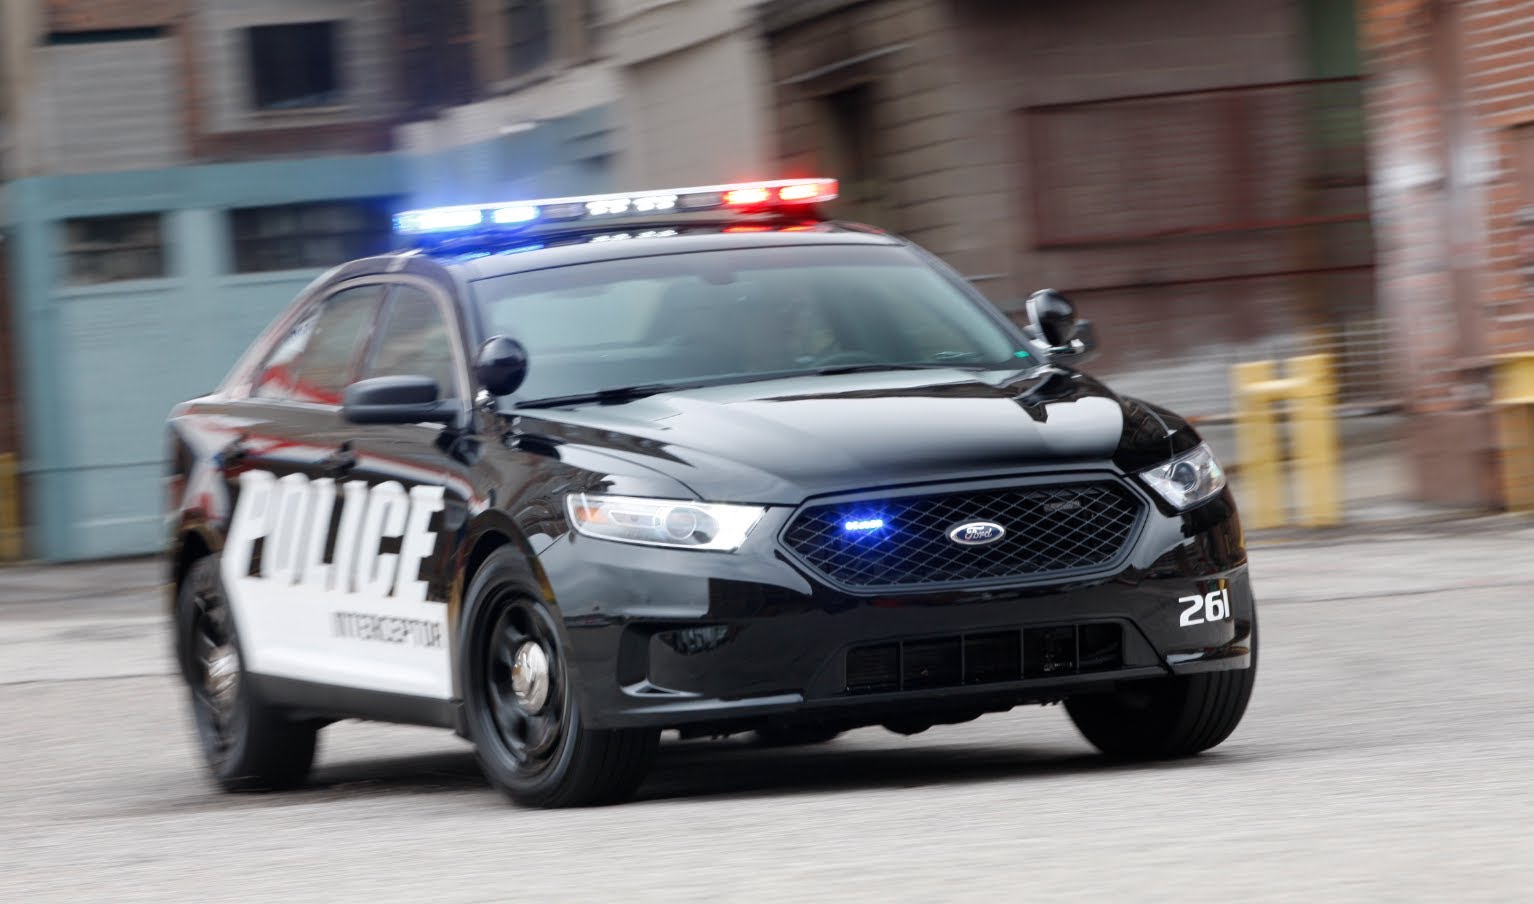 Нужны полицейские машины. Ford Police Interceptor. Ford Police Interceptor 2014. Ford Police Interceptor 1980. Dodge Charger Police Interceptor.